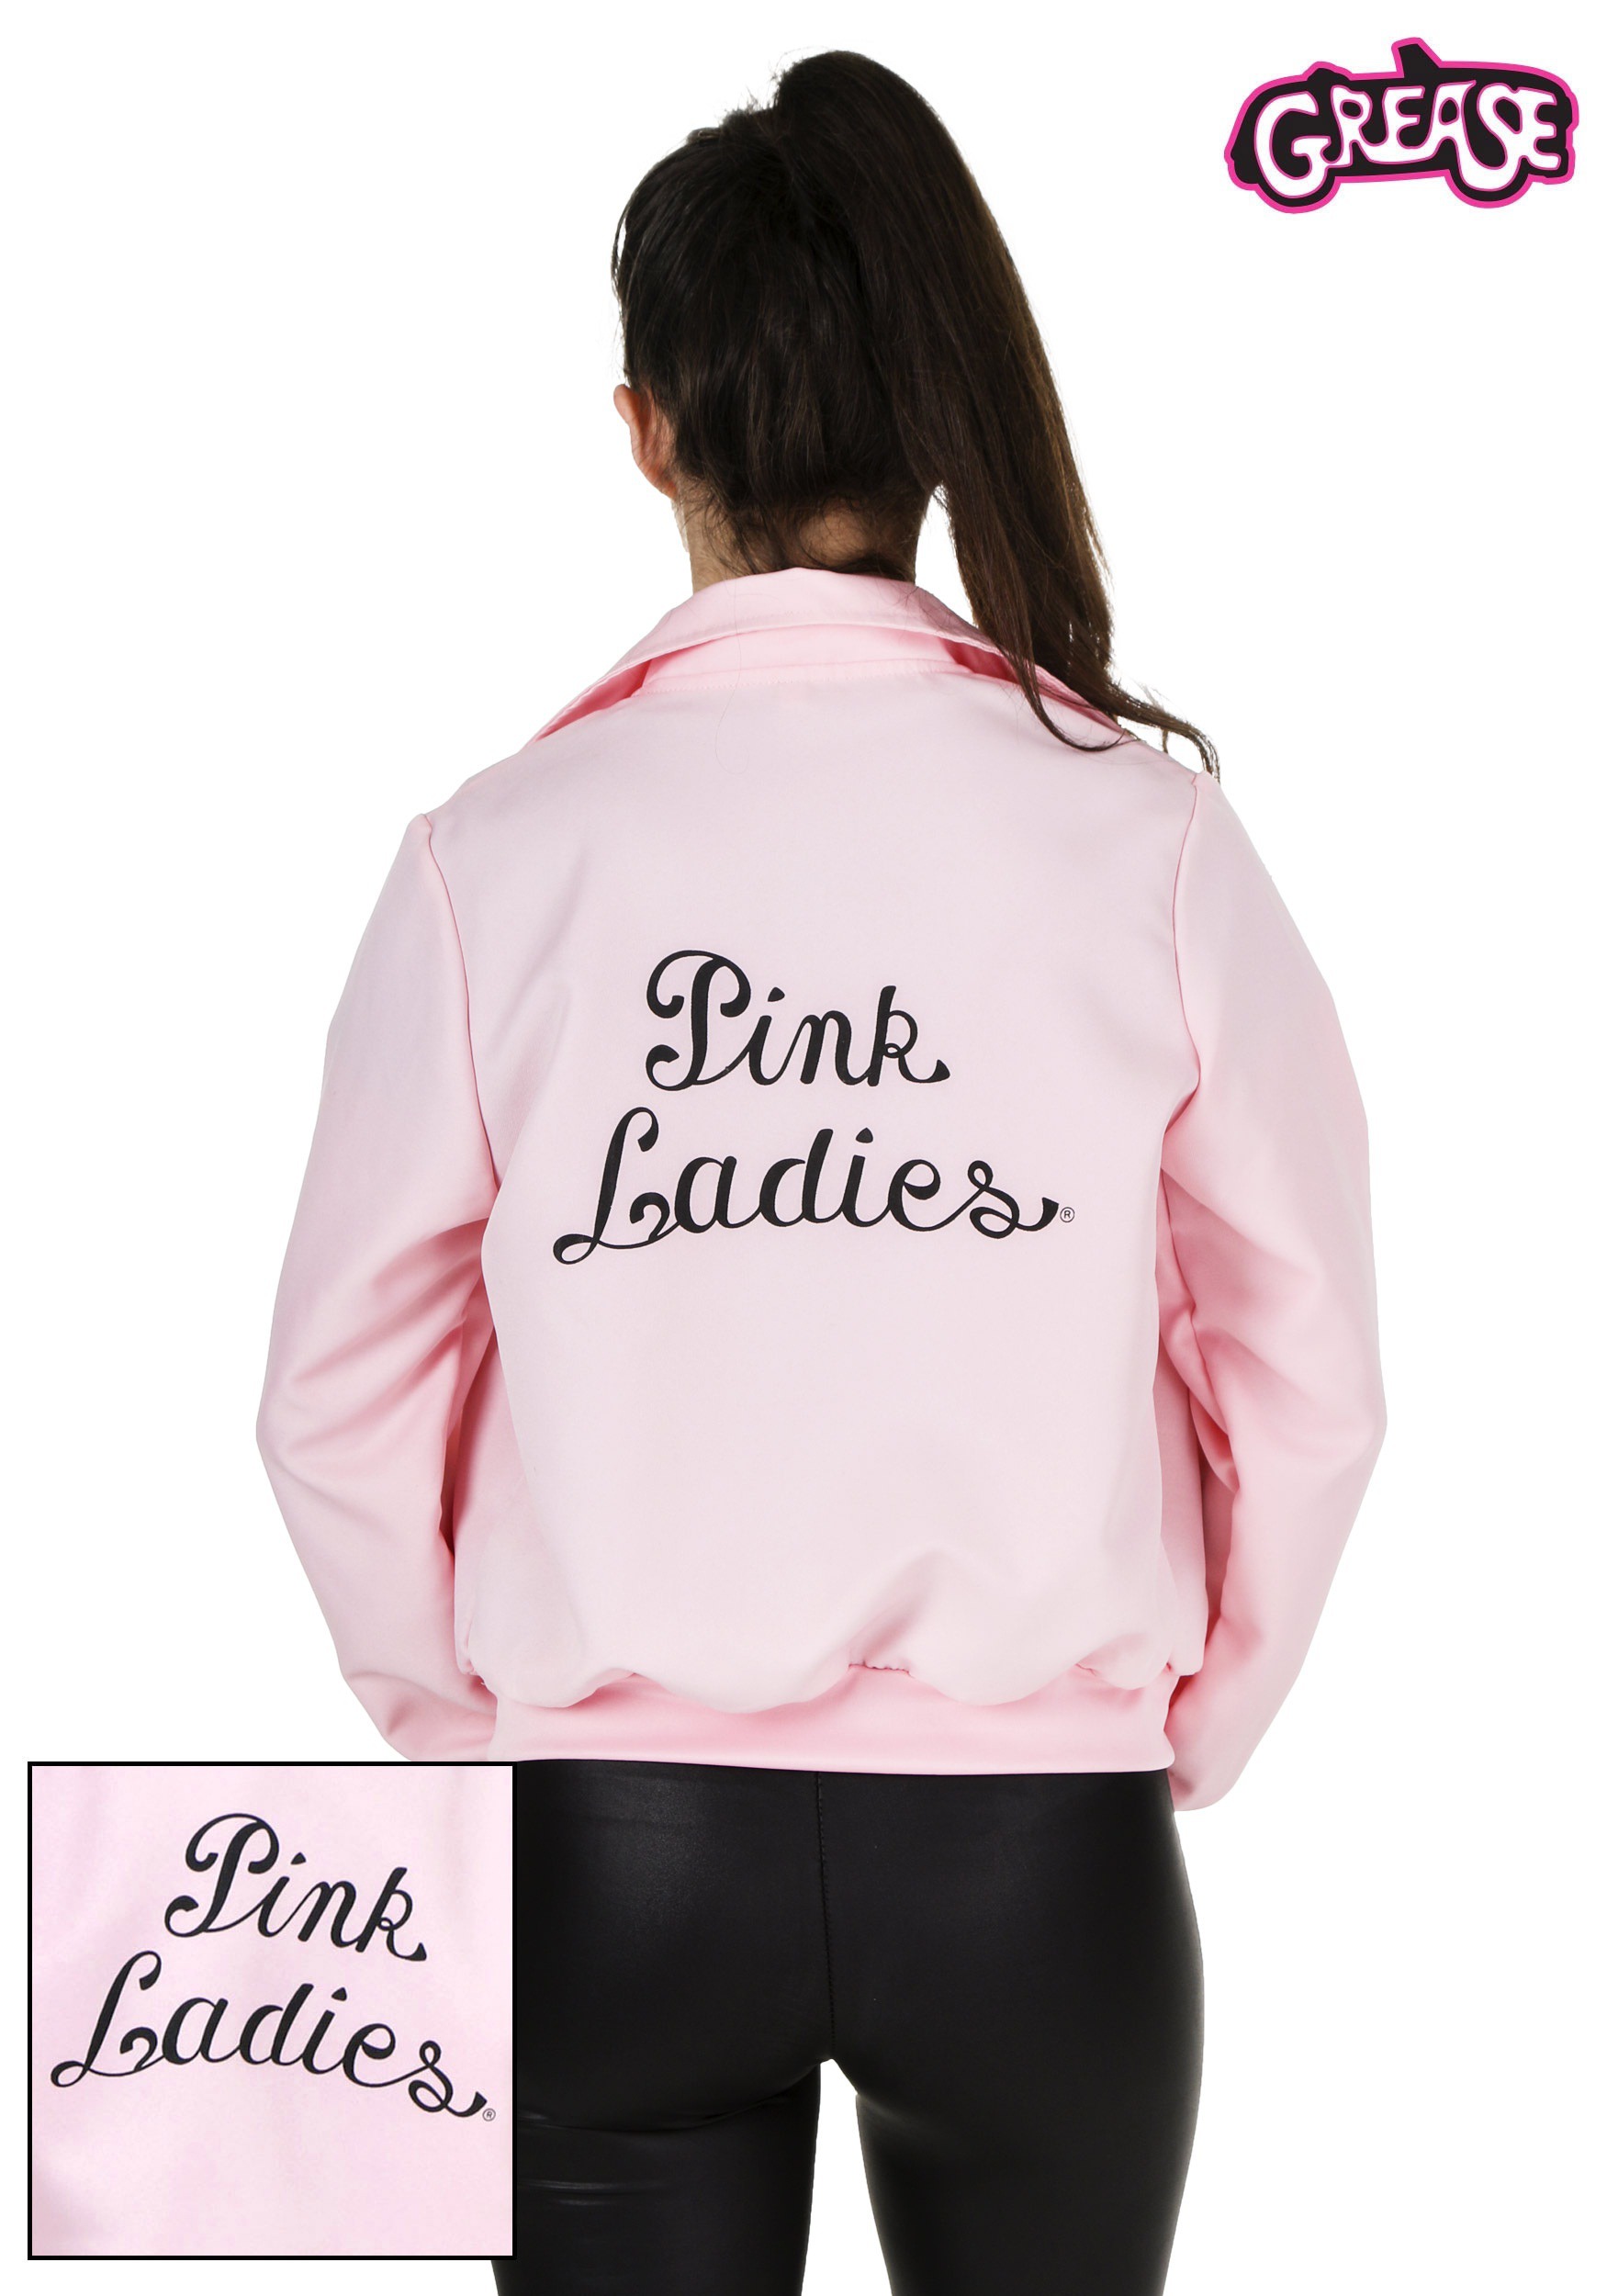 Deluxe Pink Ladies Jacket Costume For Women